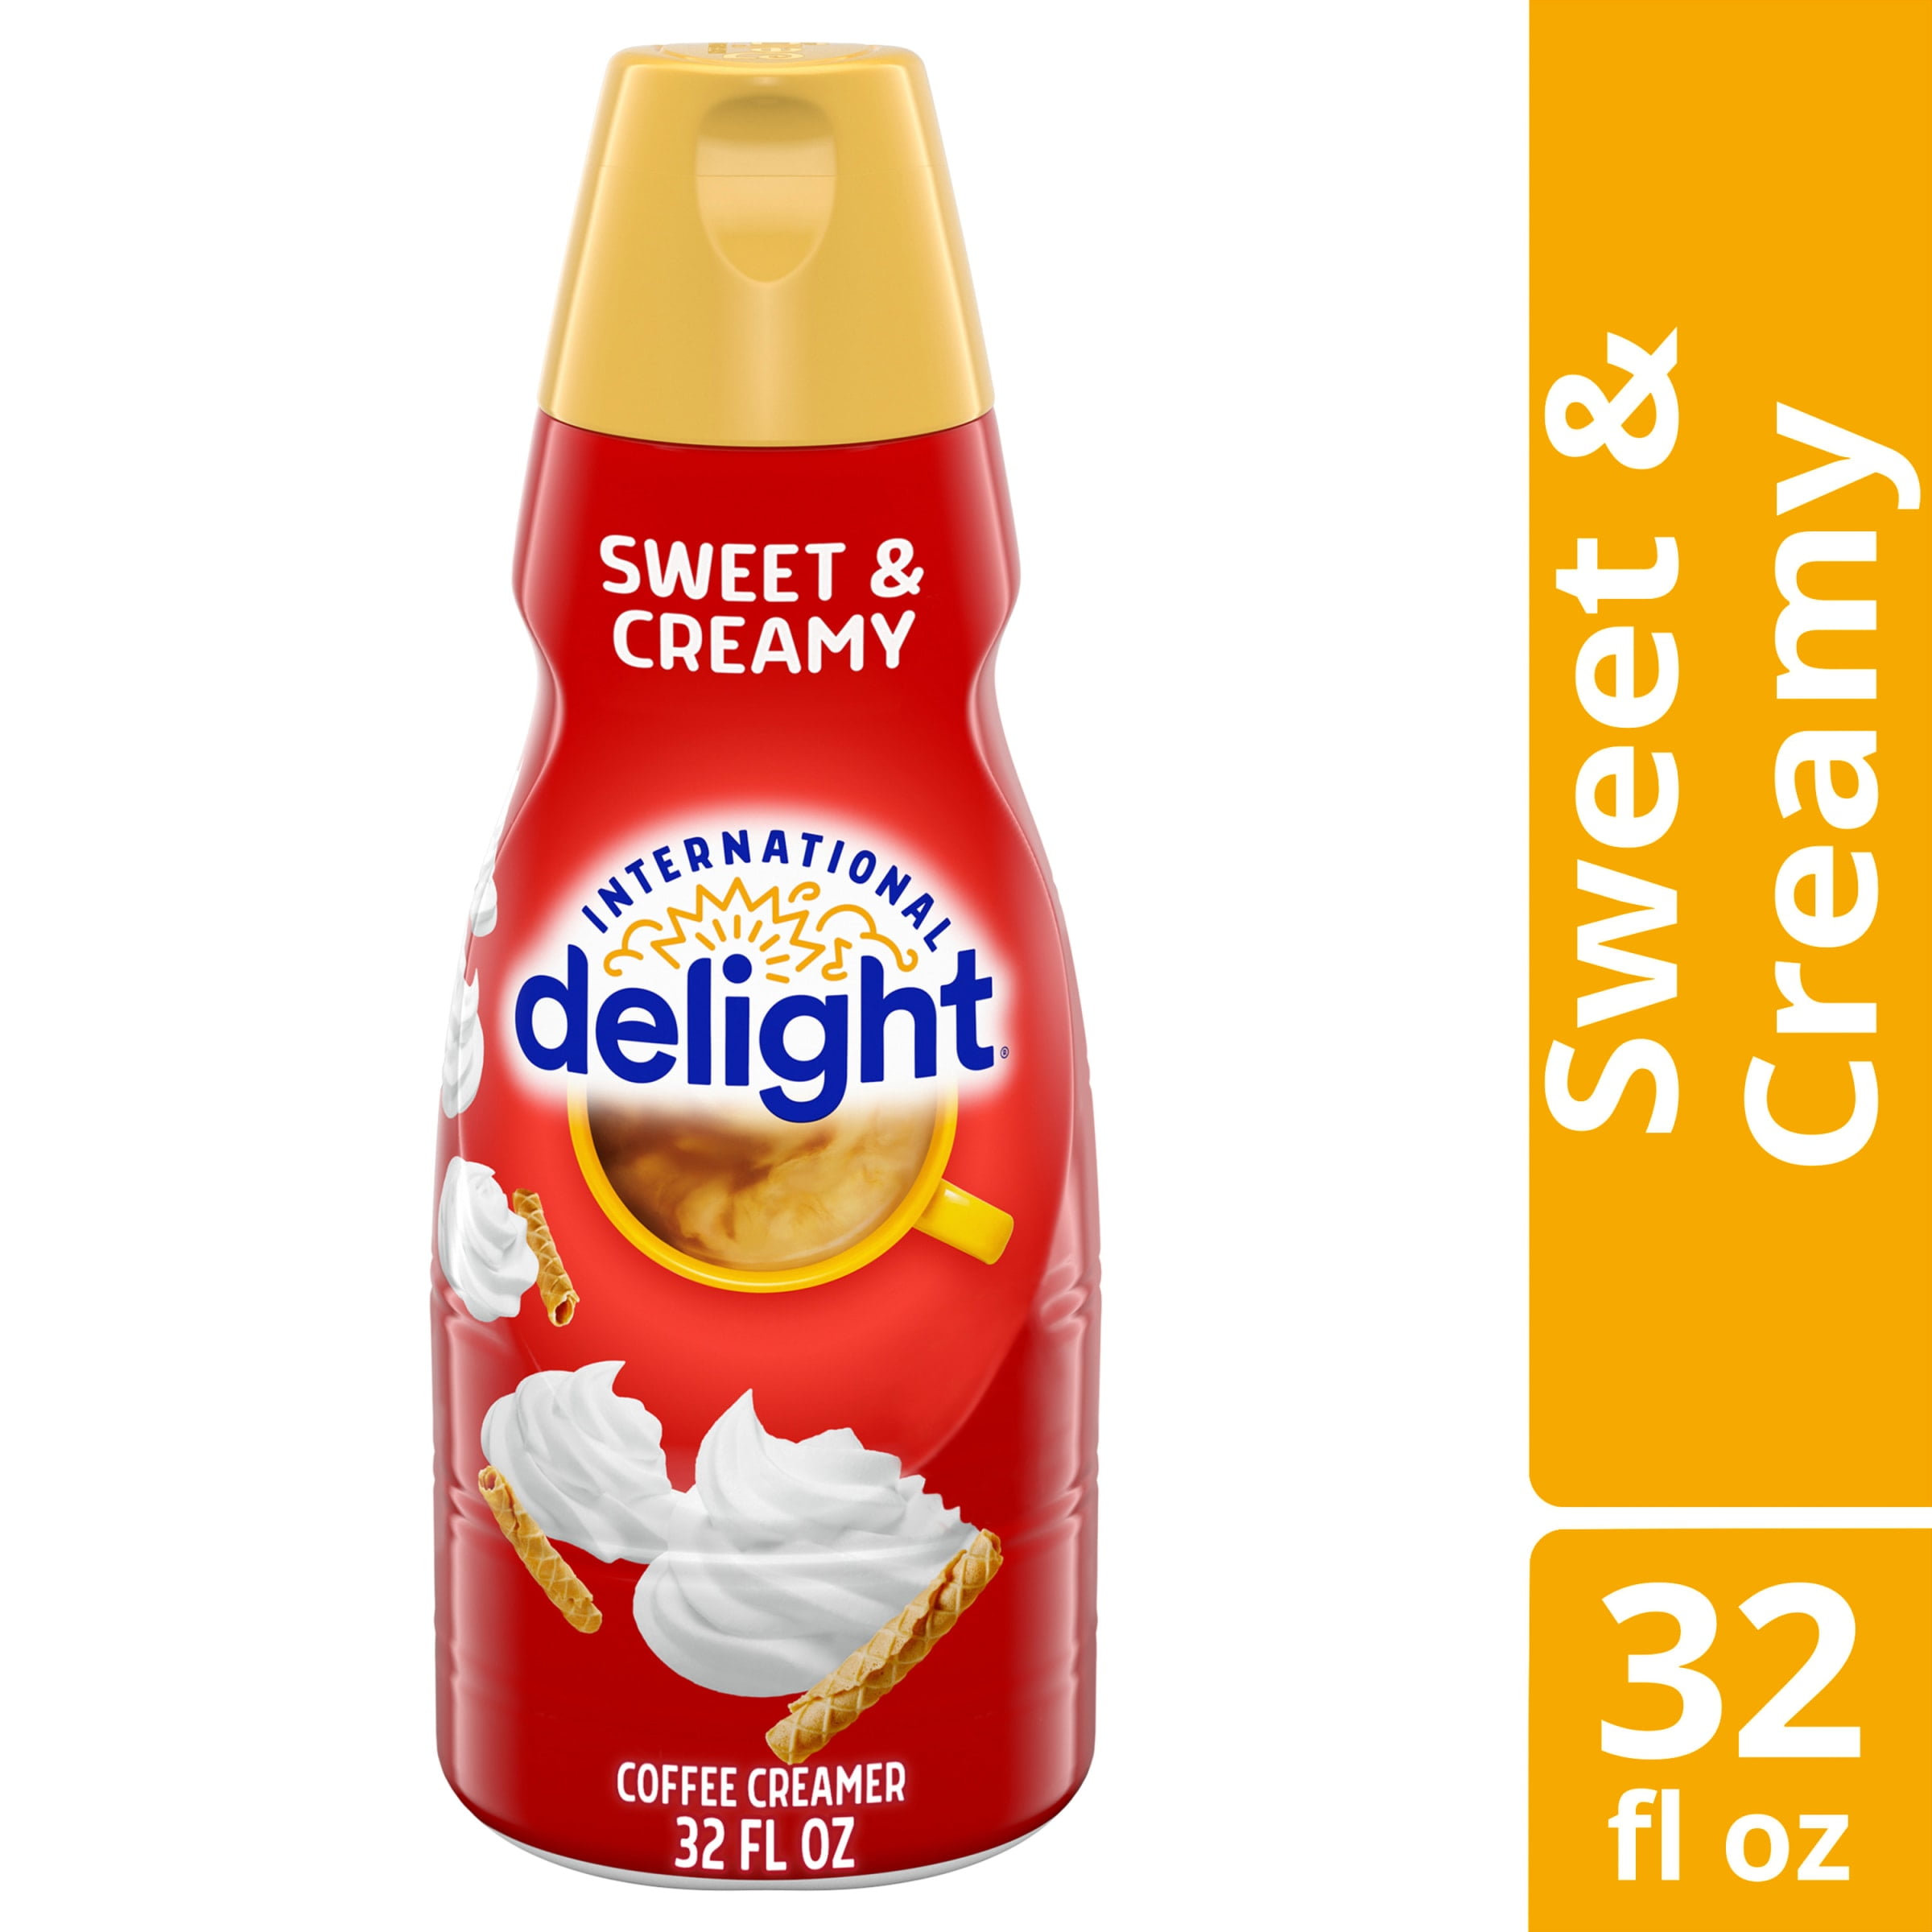 International Delight Sweet & Creamy Coffee Creamer, 32 fl oz Bottle